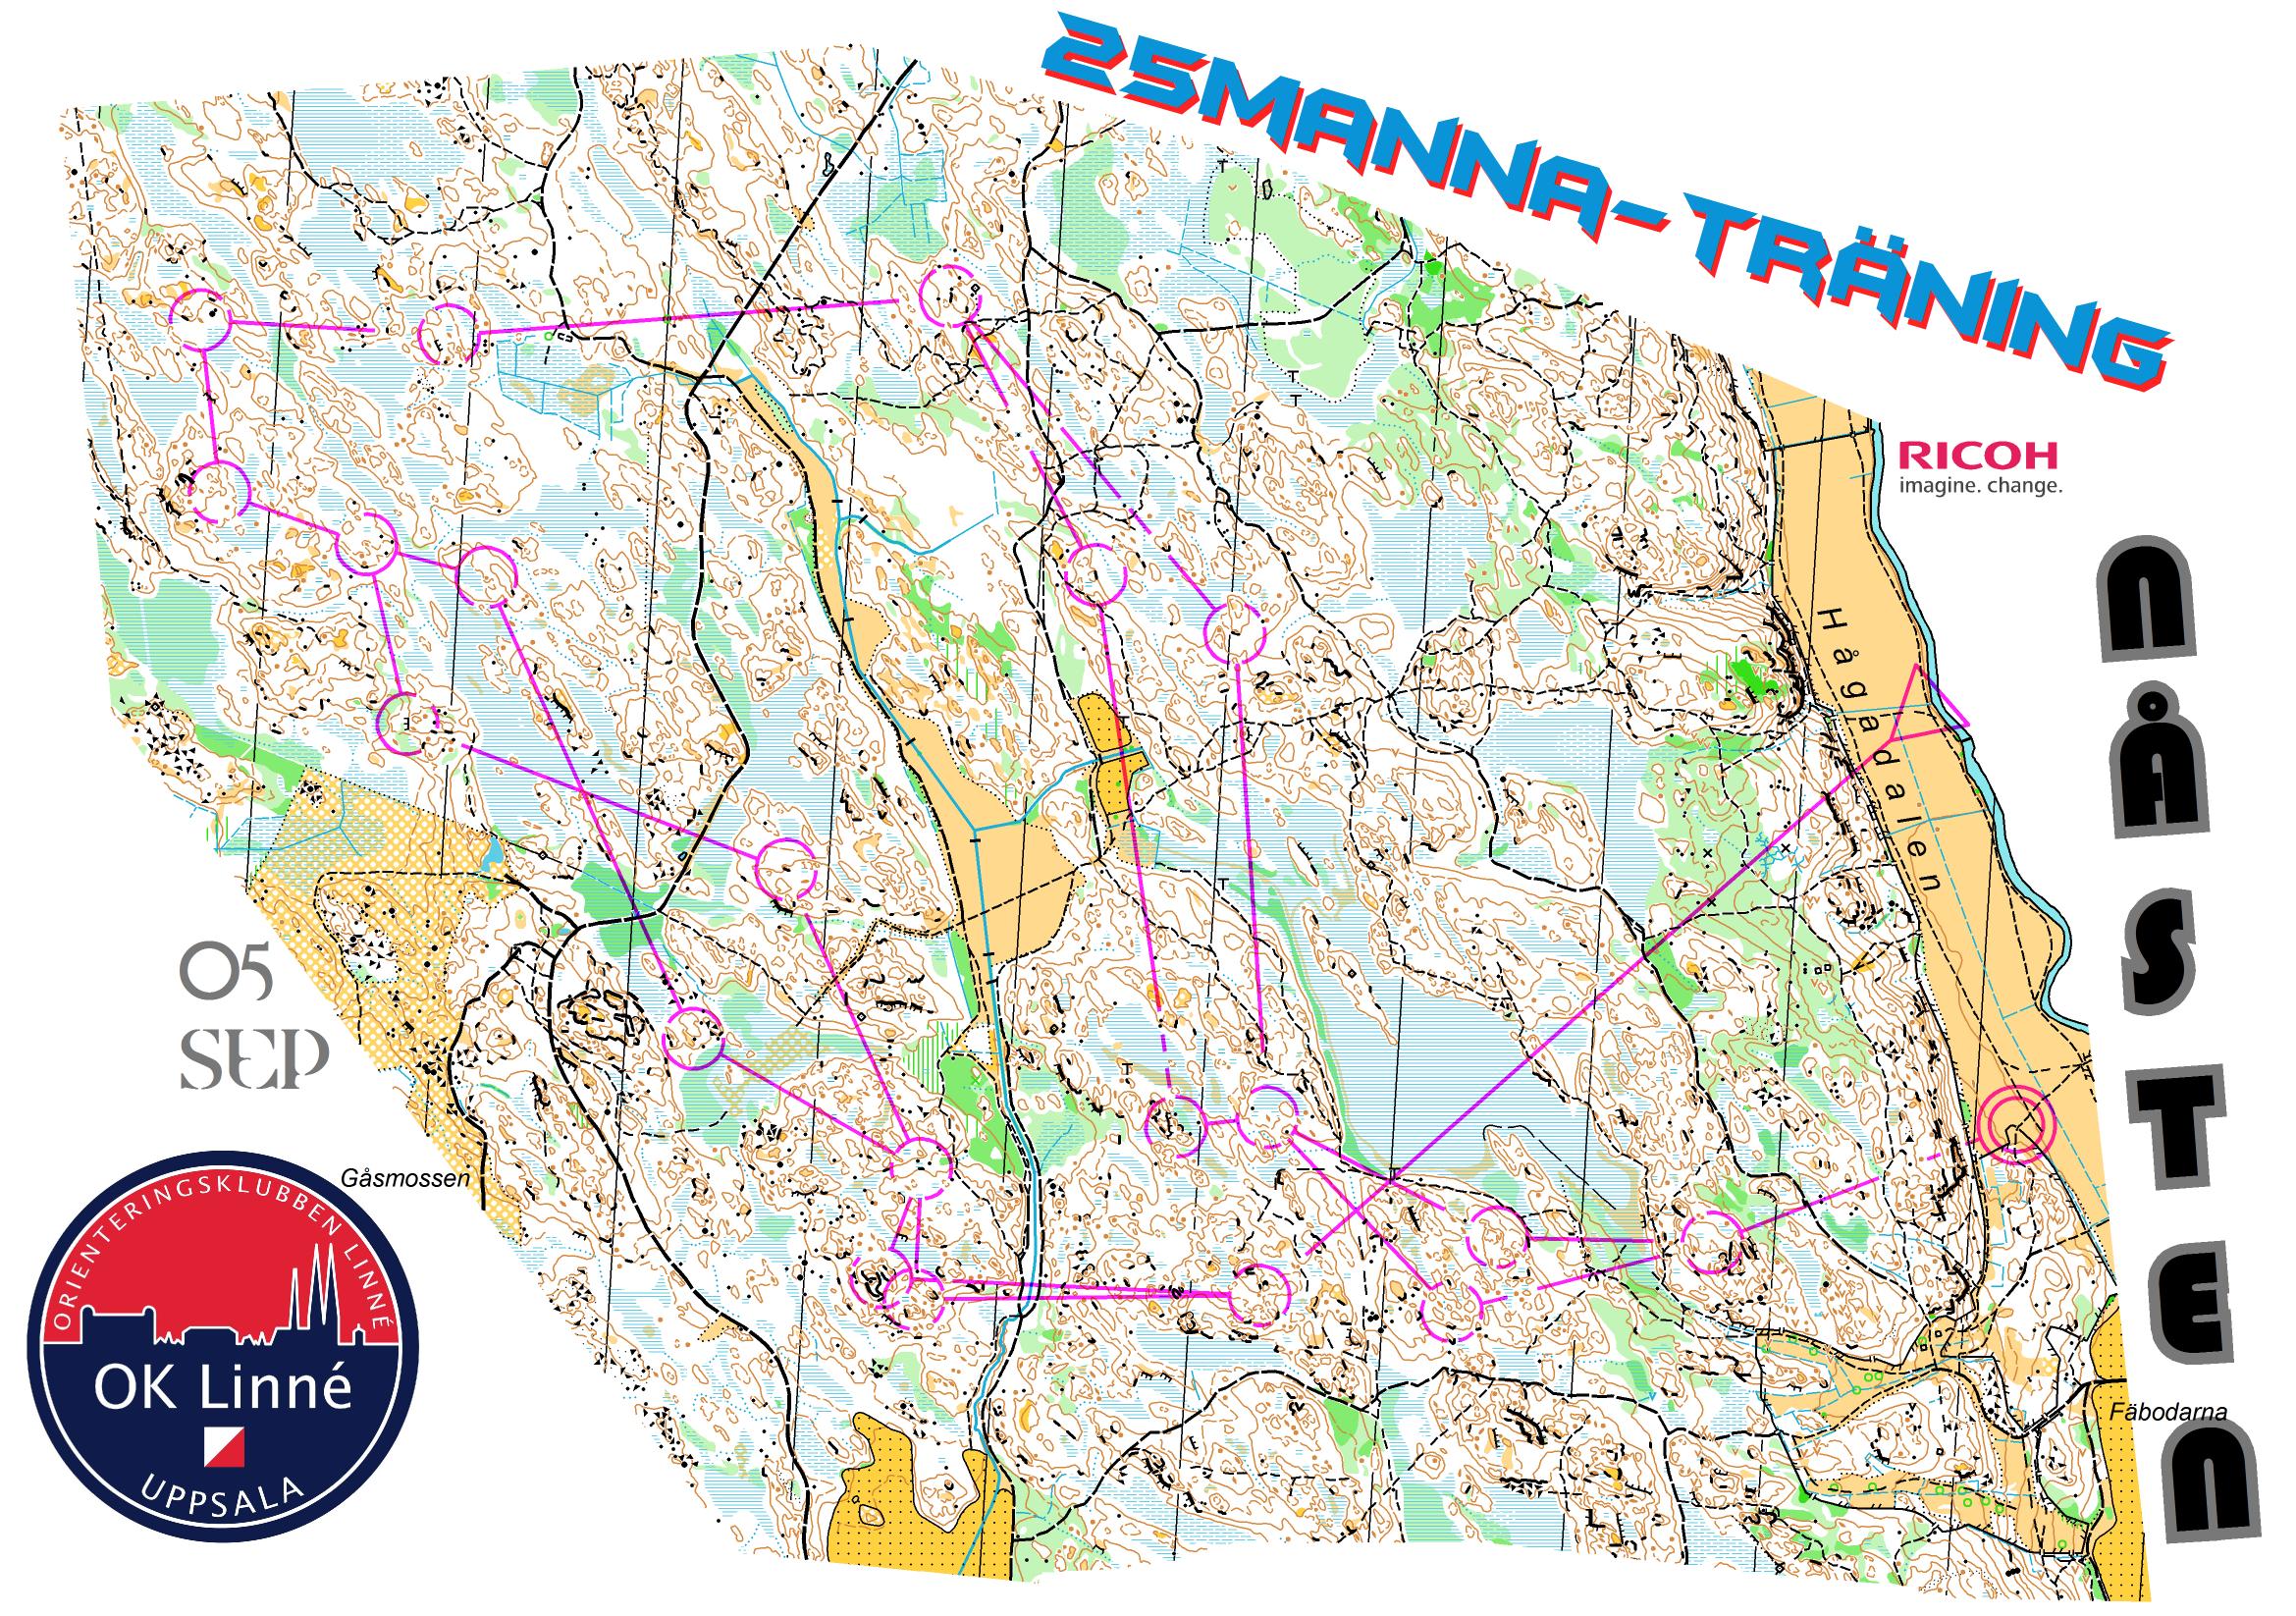 25manna-träning, Lång (2013-09-05)